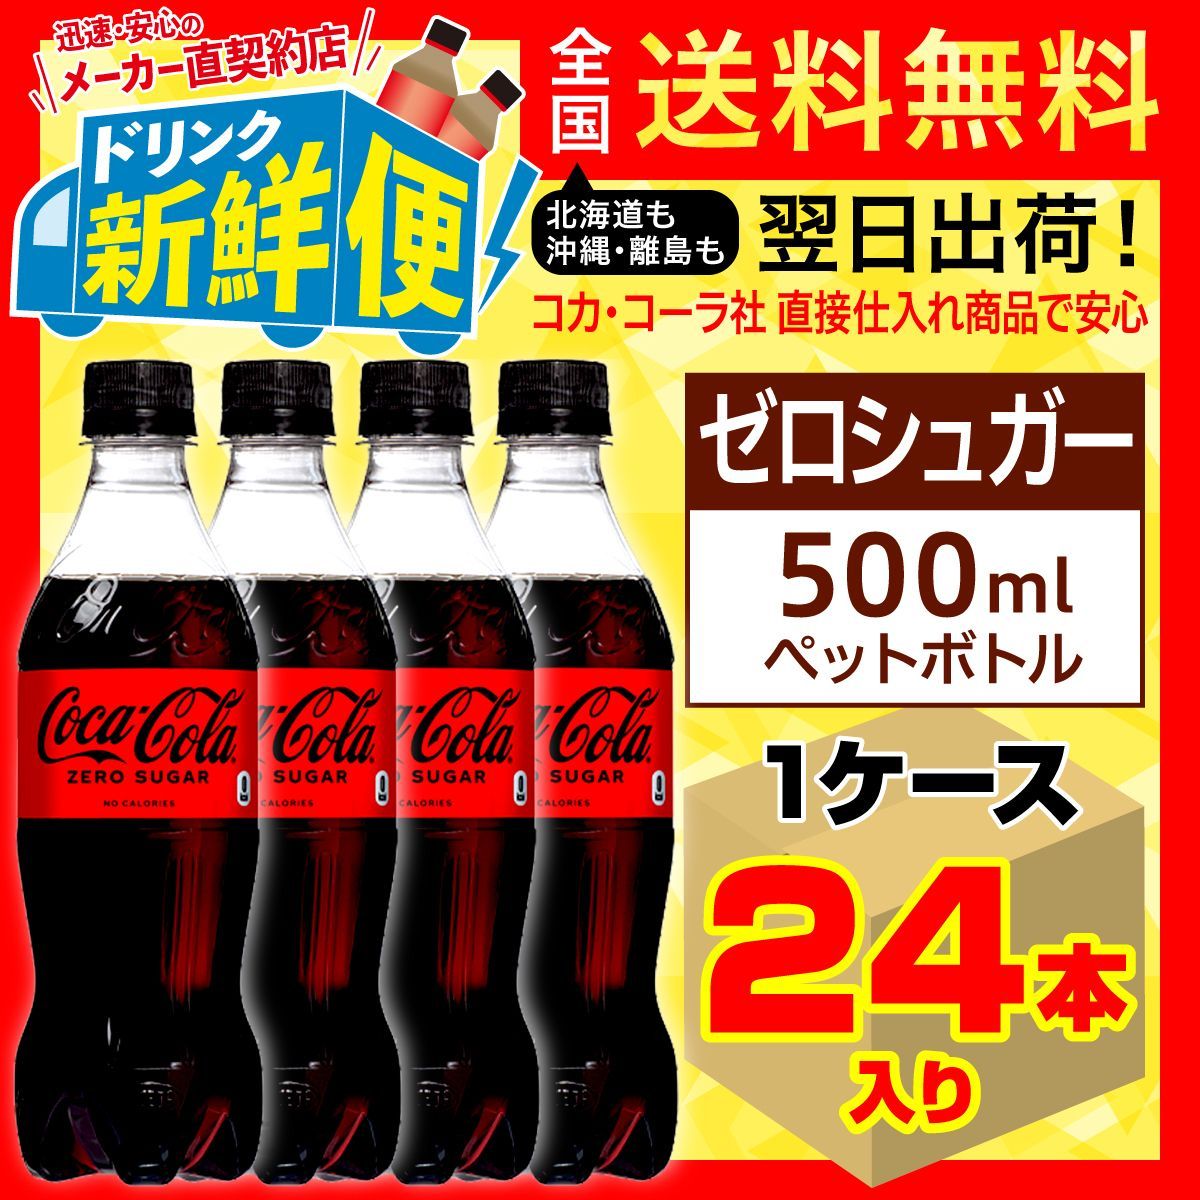 コカ・コーラ ゼロシュガー 500ml24本1ケース/糖類ゼロ/084185C1-0